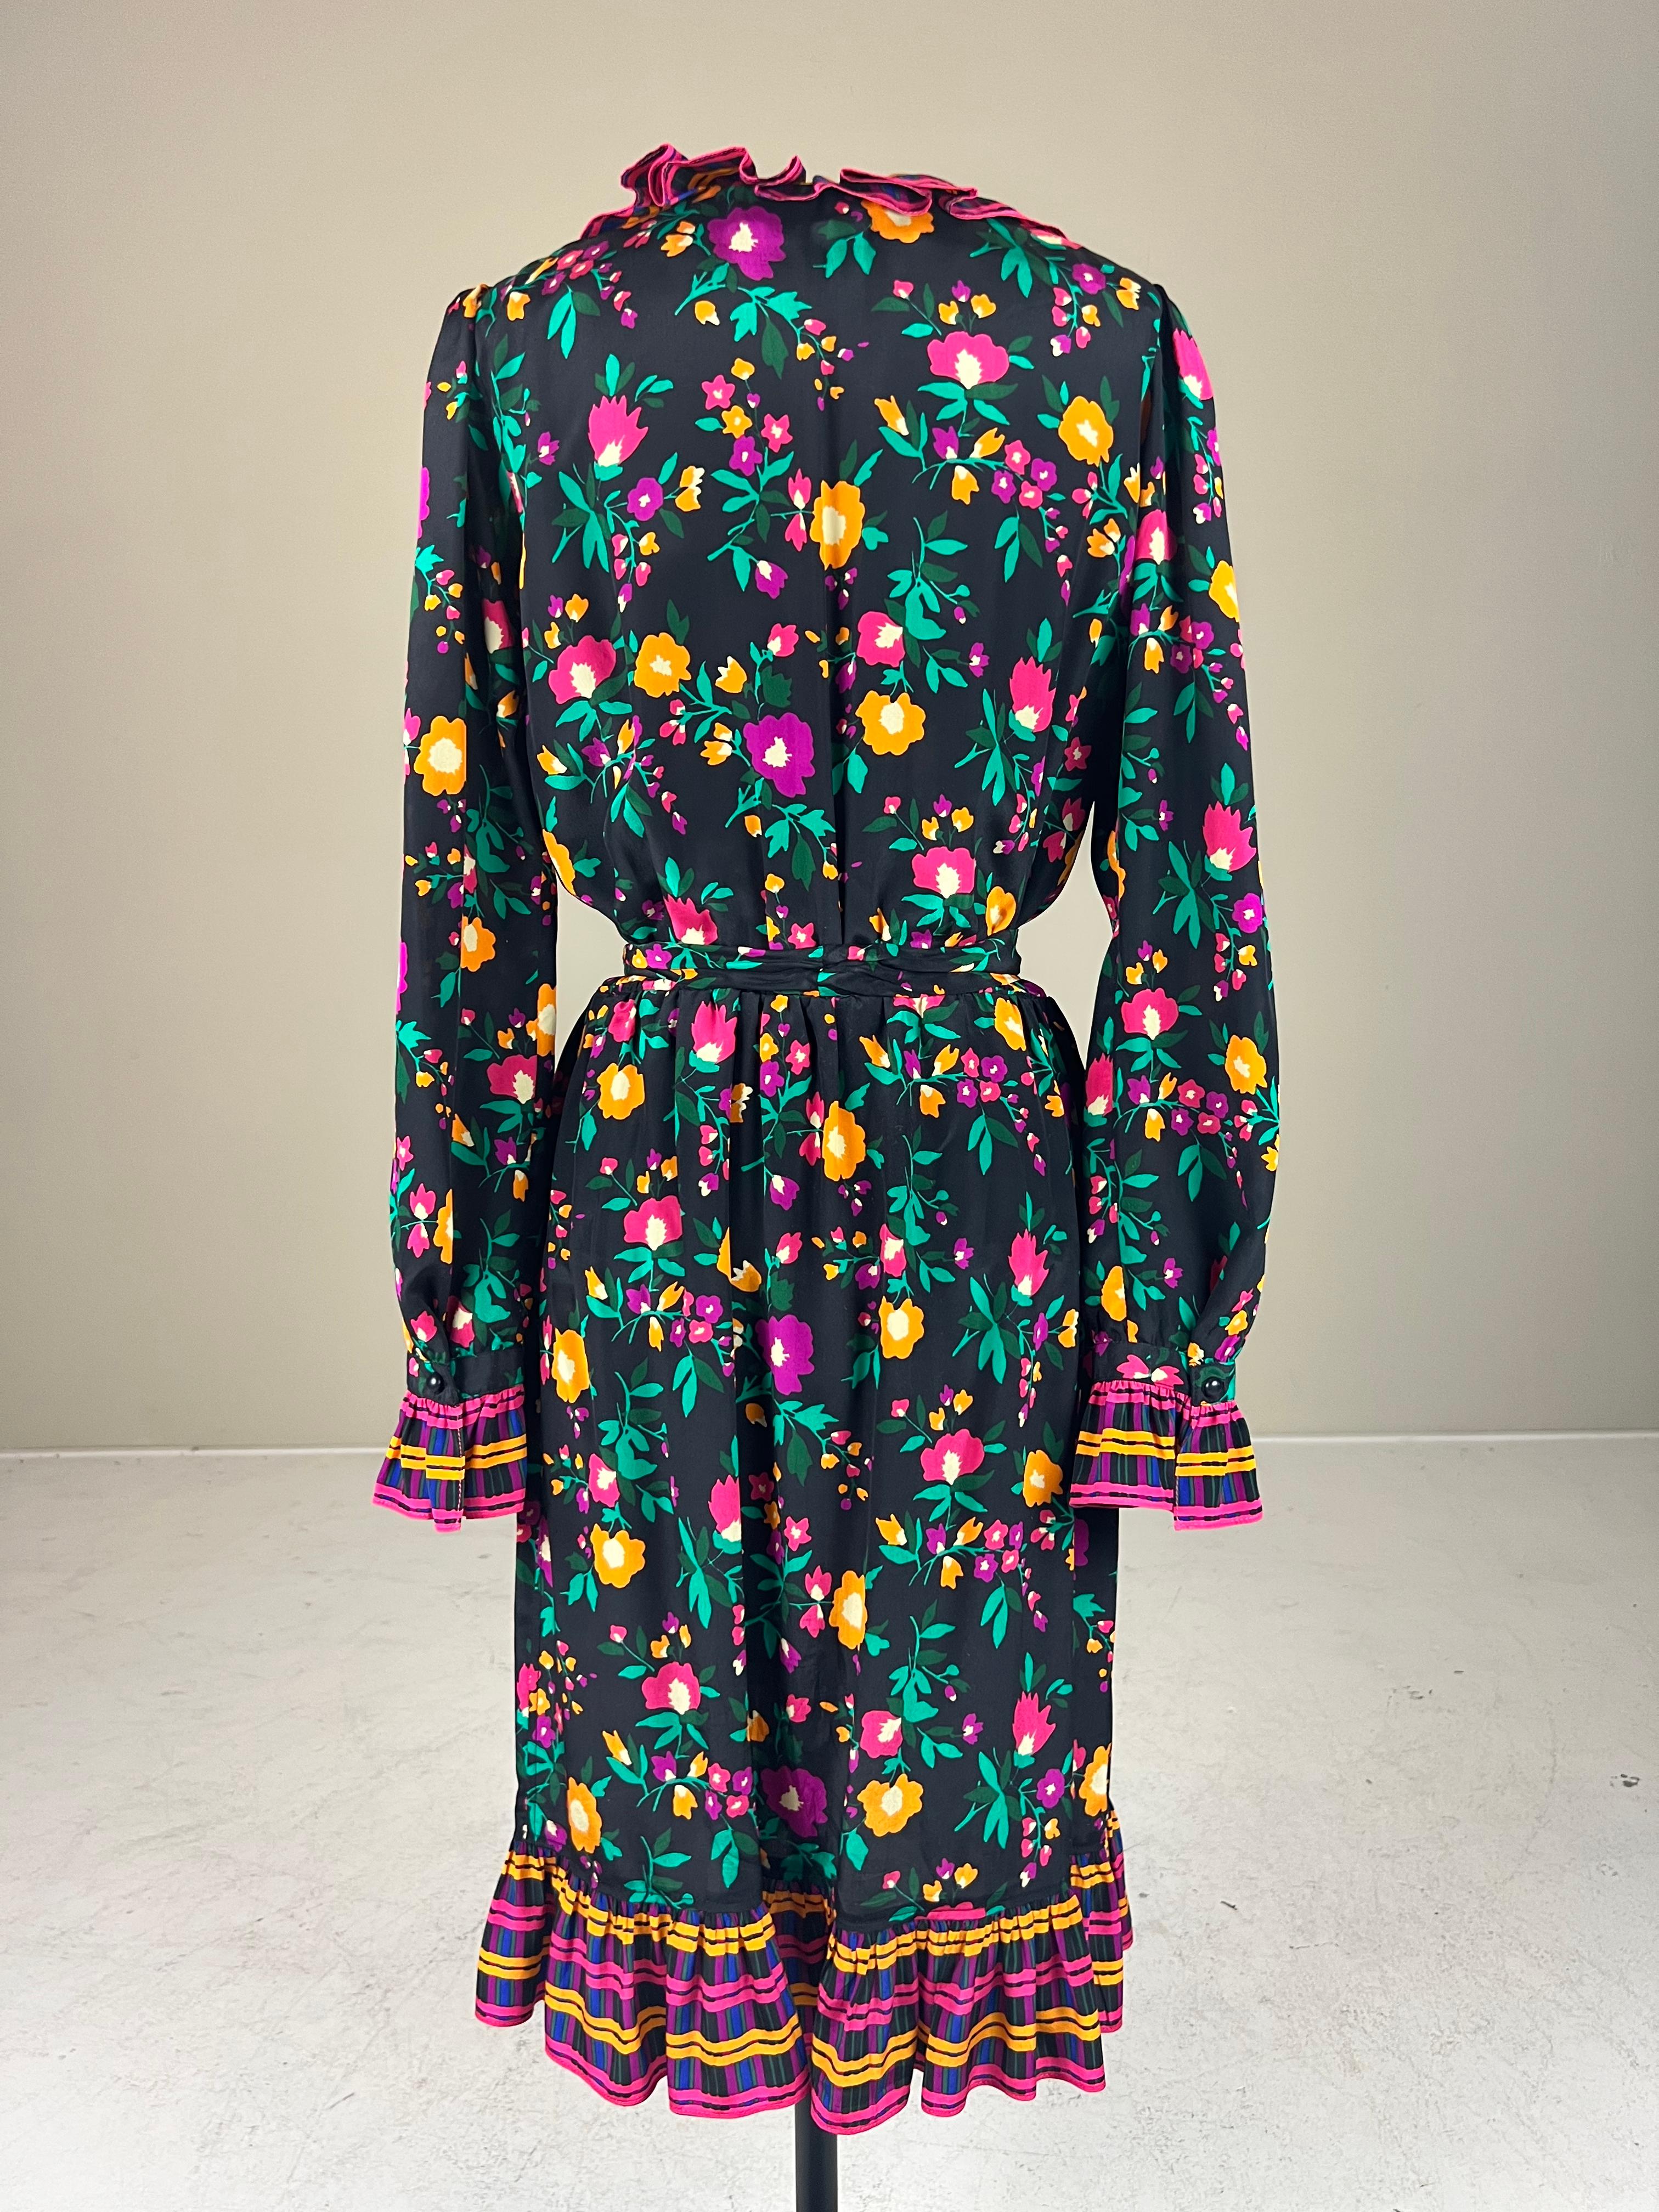 Cette robe cache-cœur en soie d'Yves Saint Laurent Rive Gauche de 1980* est dotée d'un magnifique imprimé floral multicolore. Les fleurs roses, orange et violettes entourées de feuilles vertes sont posées sur un fond noir. Au niveau de l'encolure,